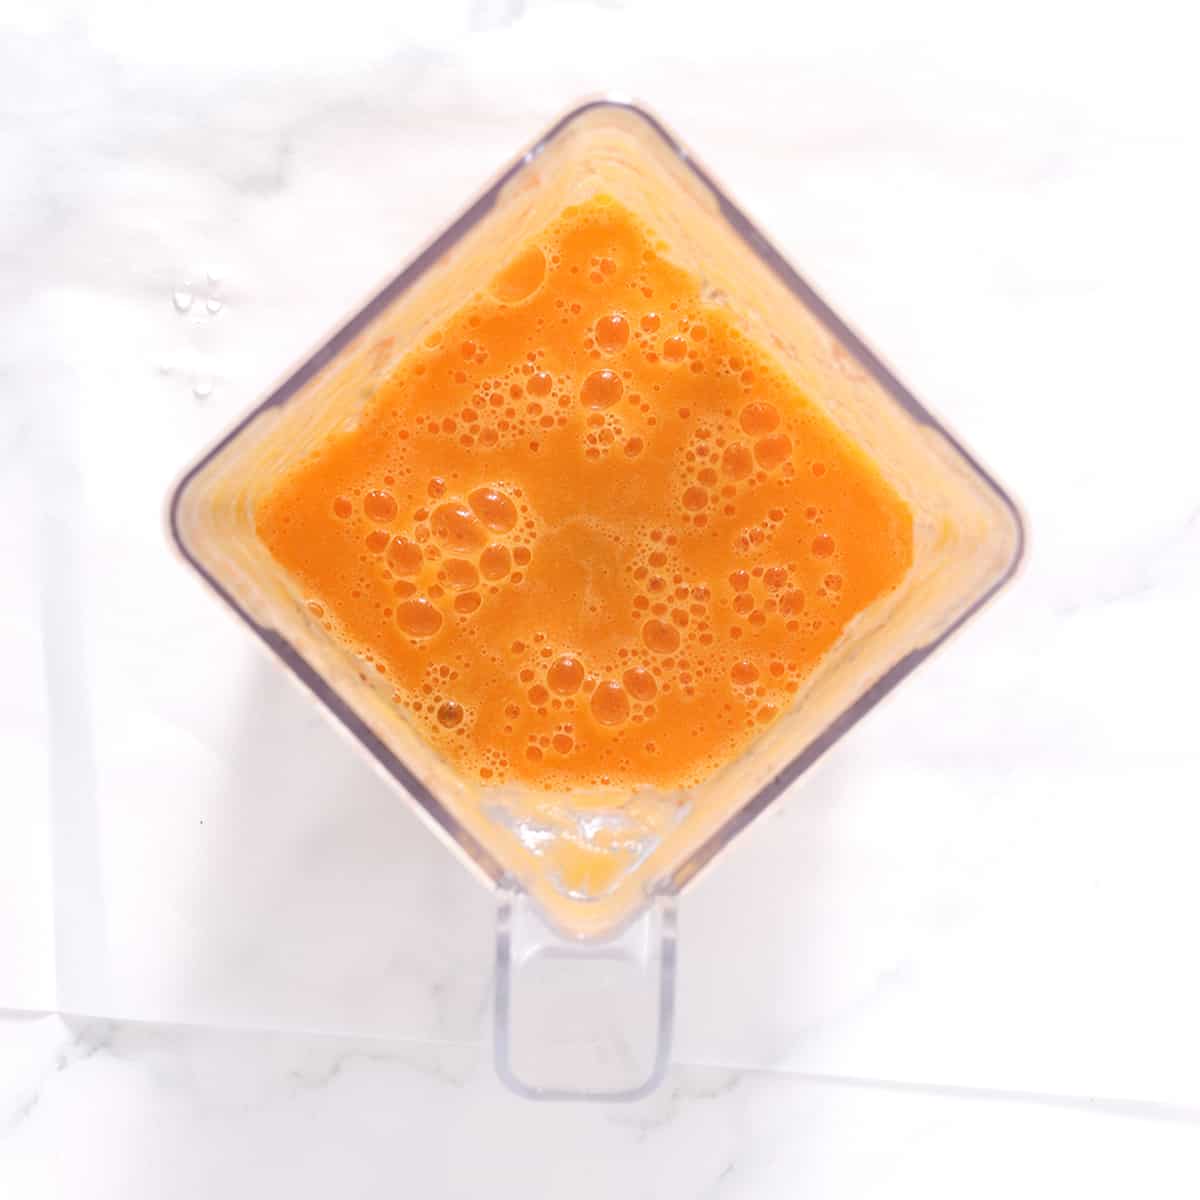 carrot ginger juice blended.